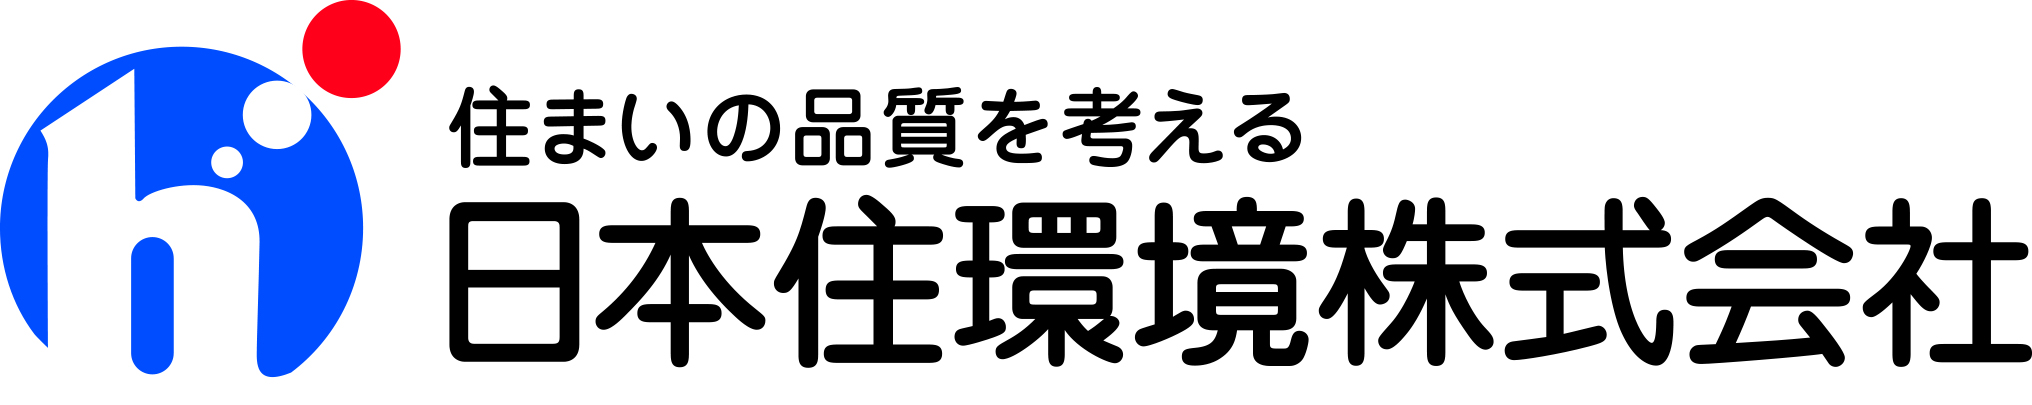 日本住環境株式会社ロゴ